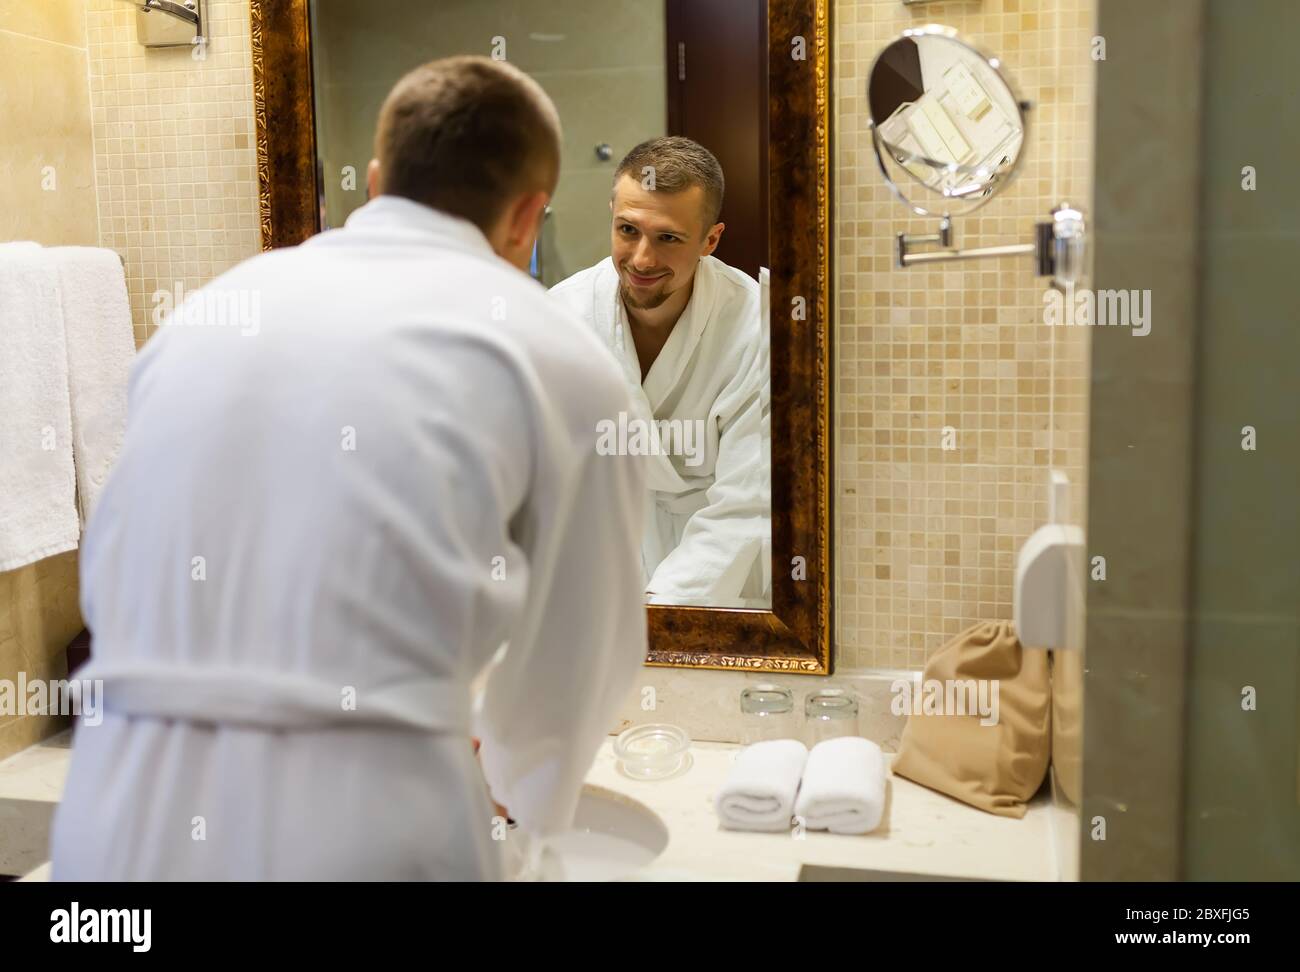 El chico sonríe en un abrigo blanco y se mira en el espejo del baño por la  mañana. Empezar un nuevo día con una sonrisa. Un hombre joven y guapo, de  pie